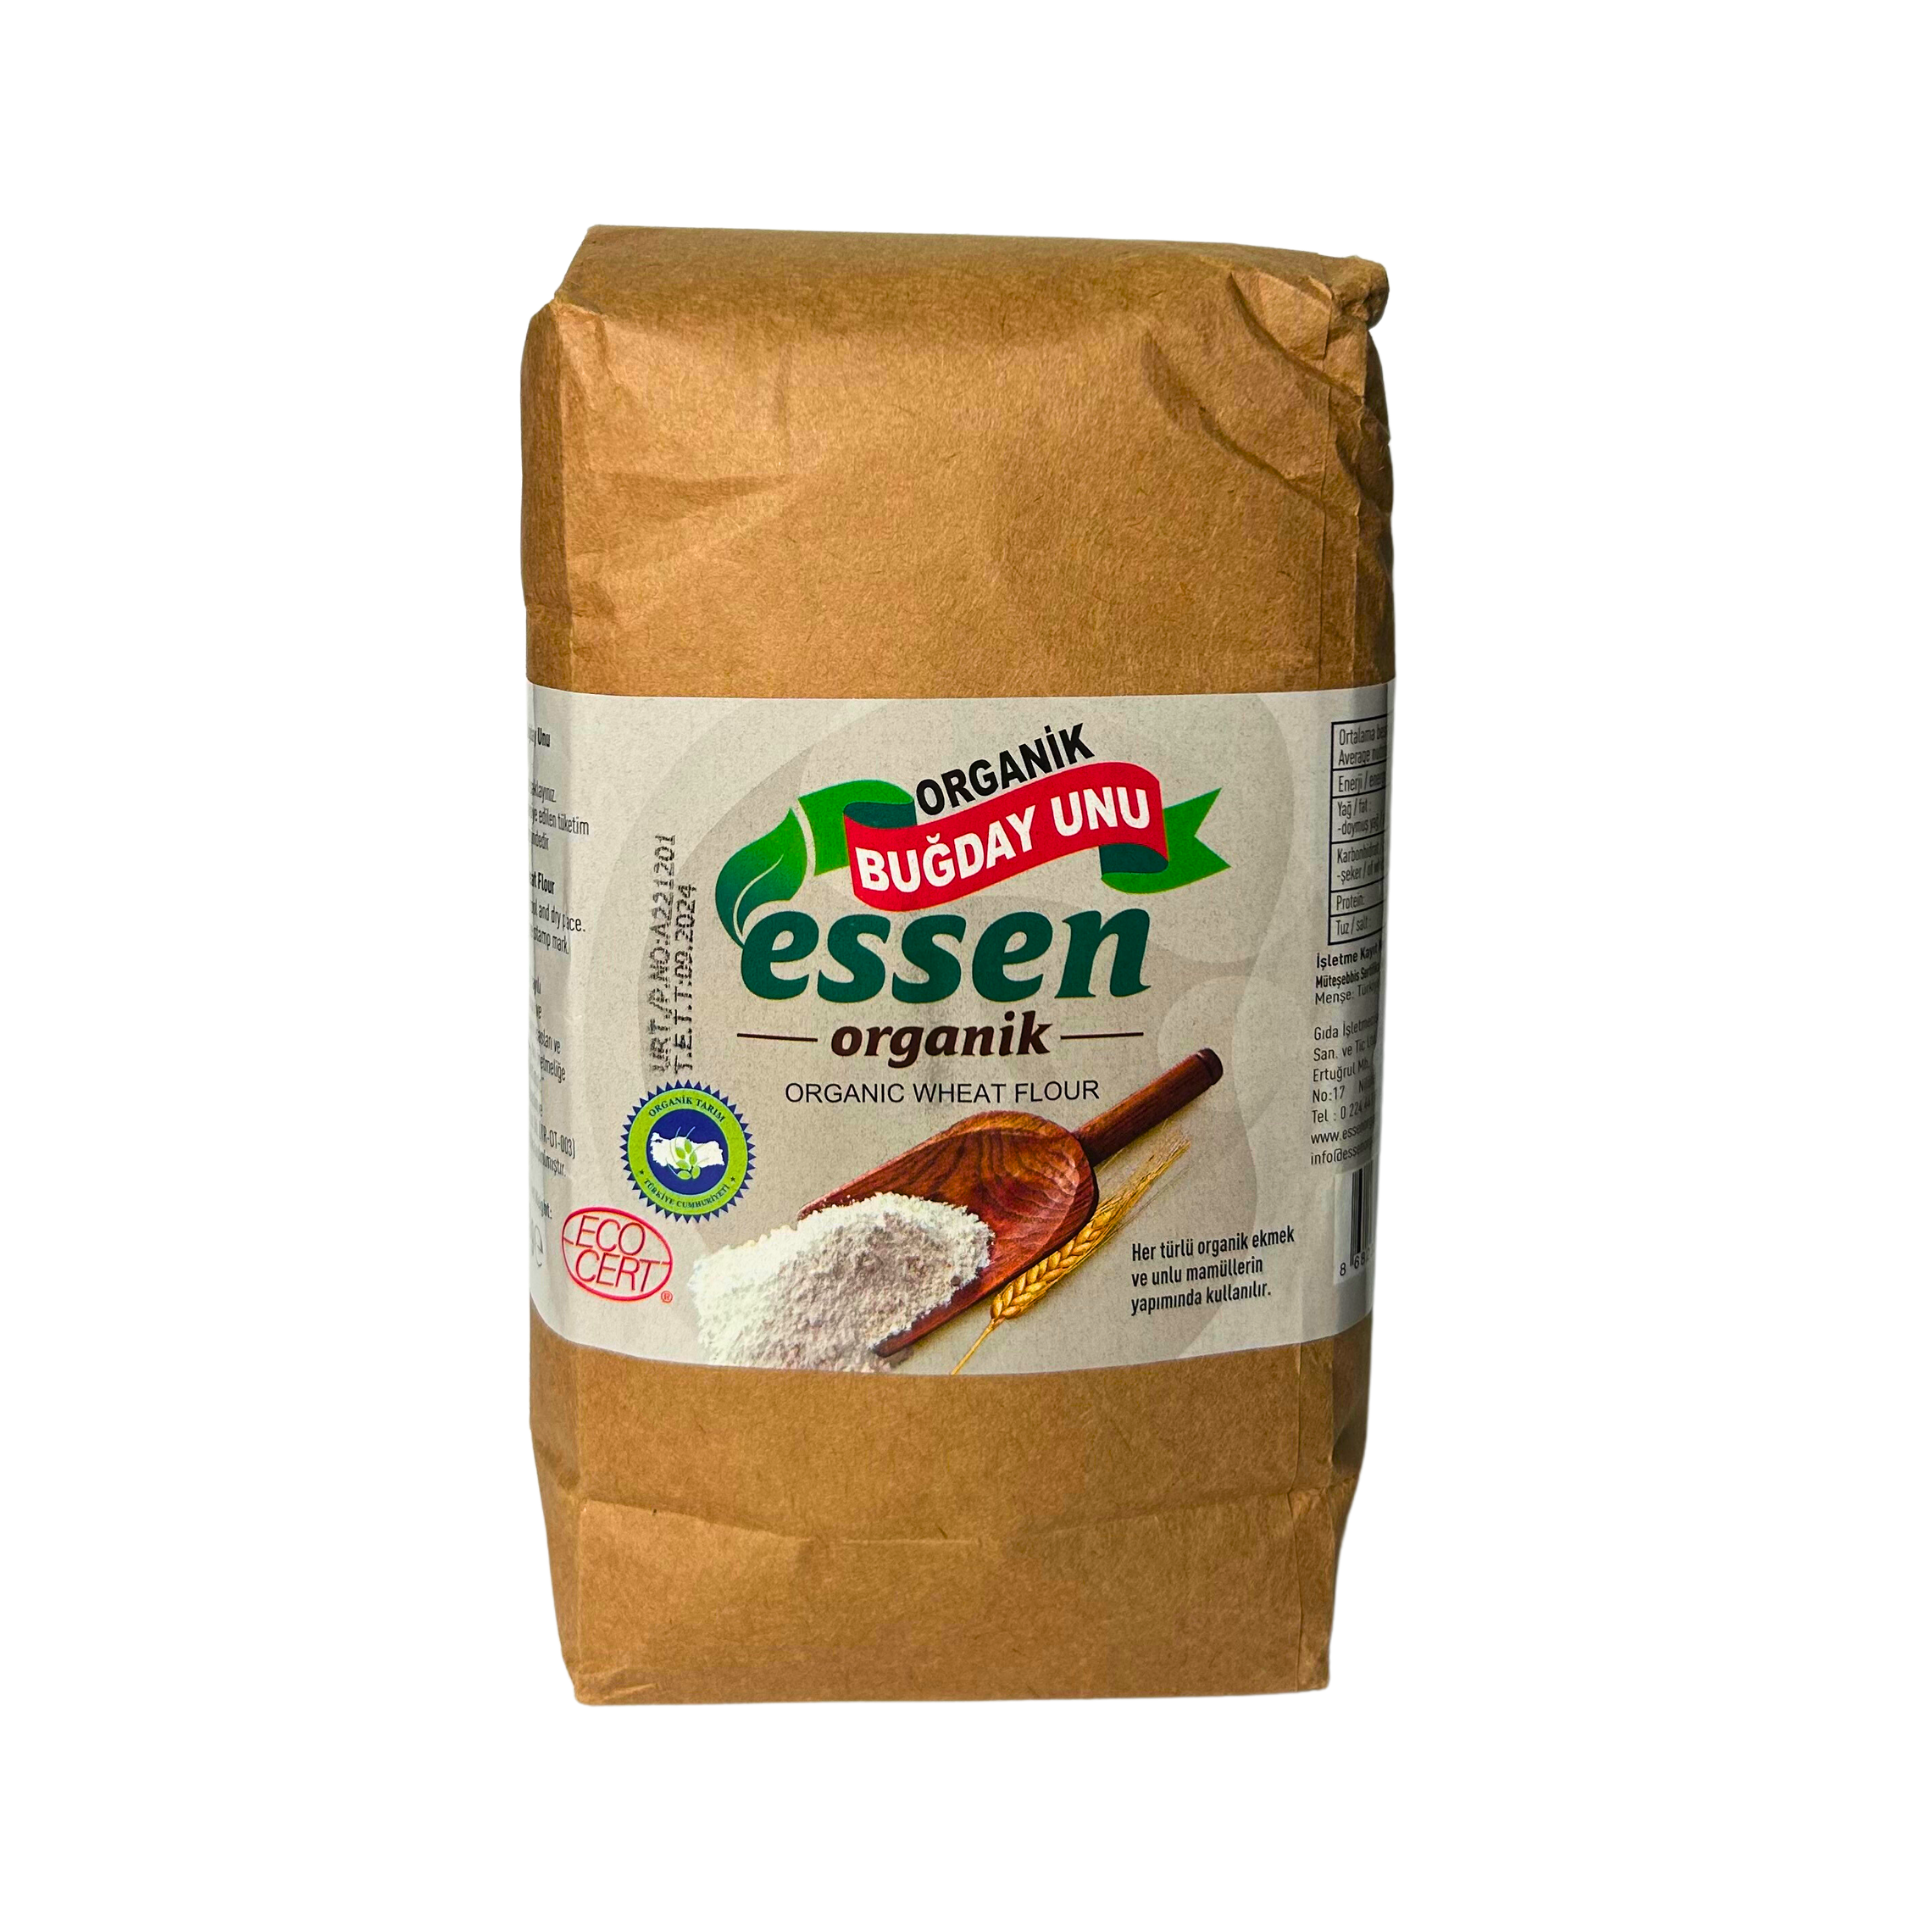 Essen Organik Buğday Unu 1000 gr (Kargo Dahil)